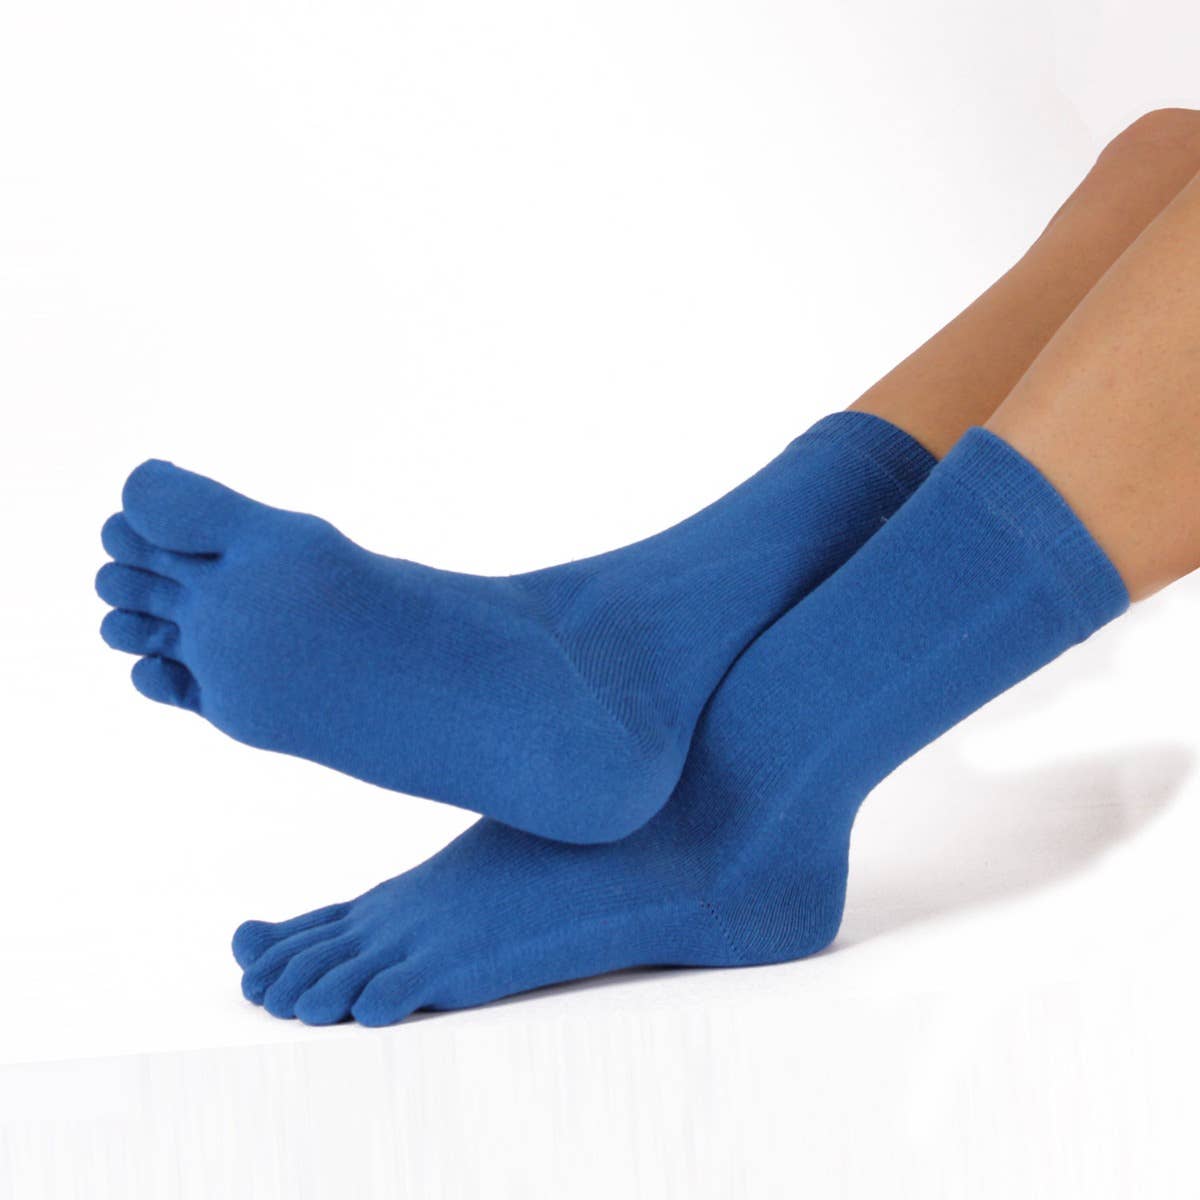 TOETOE - Calcetines de dedos de media caña - Tallas 35-46 - Mid-Blue